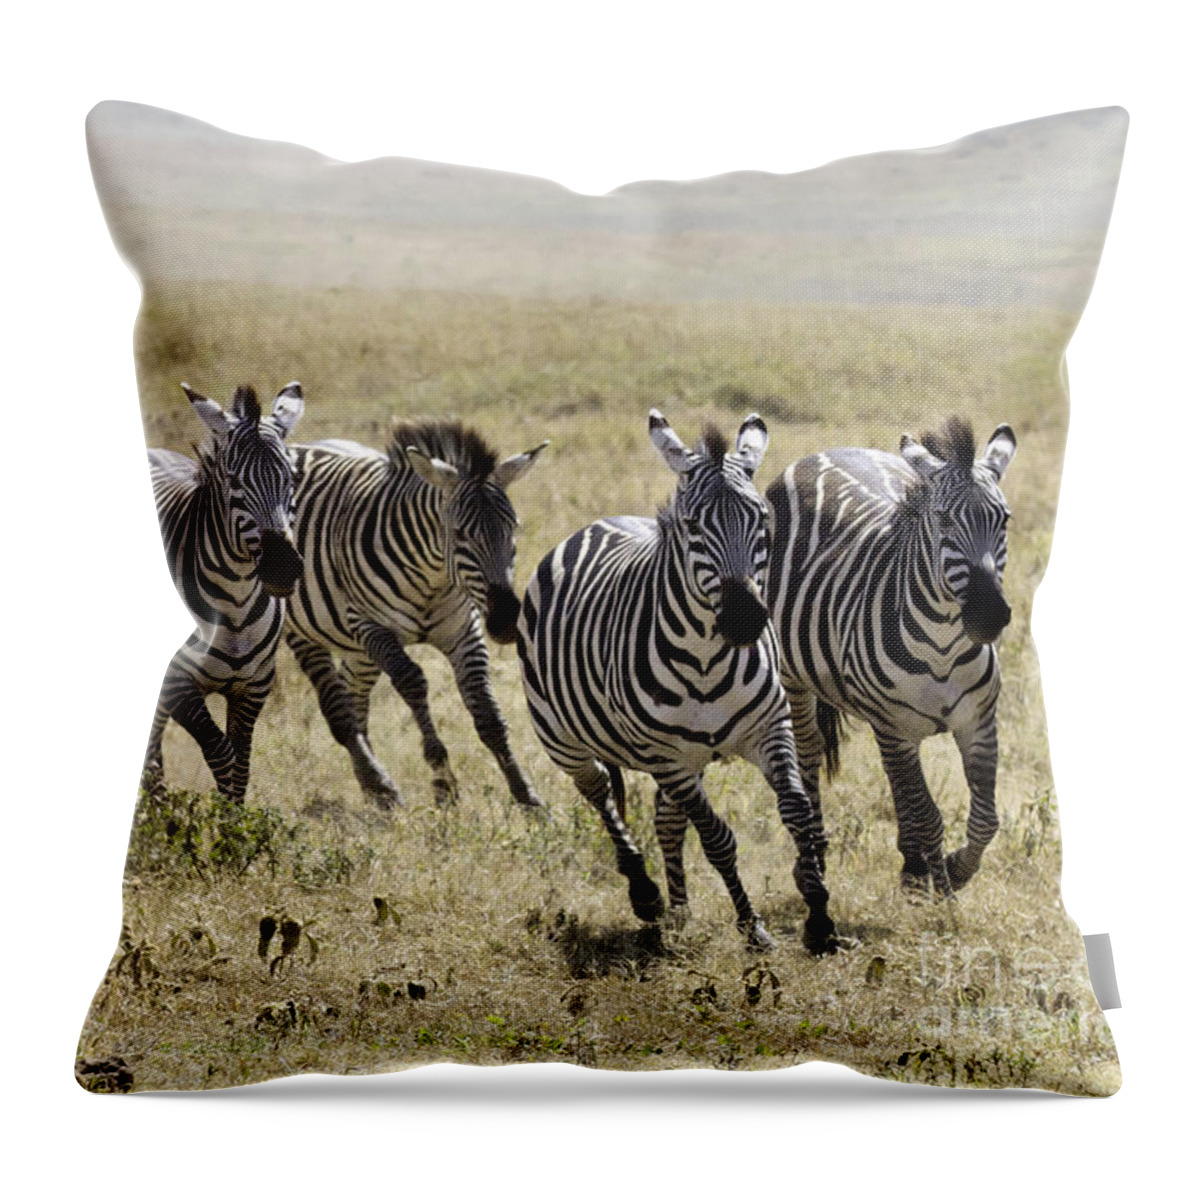 Zebra Throw Pillow featuring the photograph Wild Zebras Running by Chris Scroggins